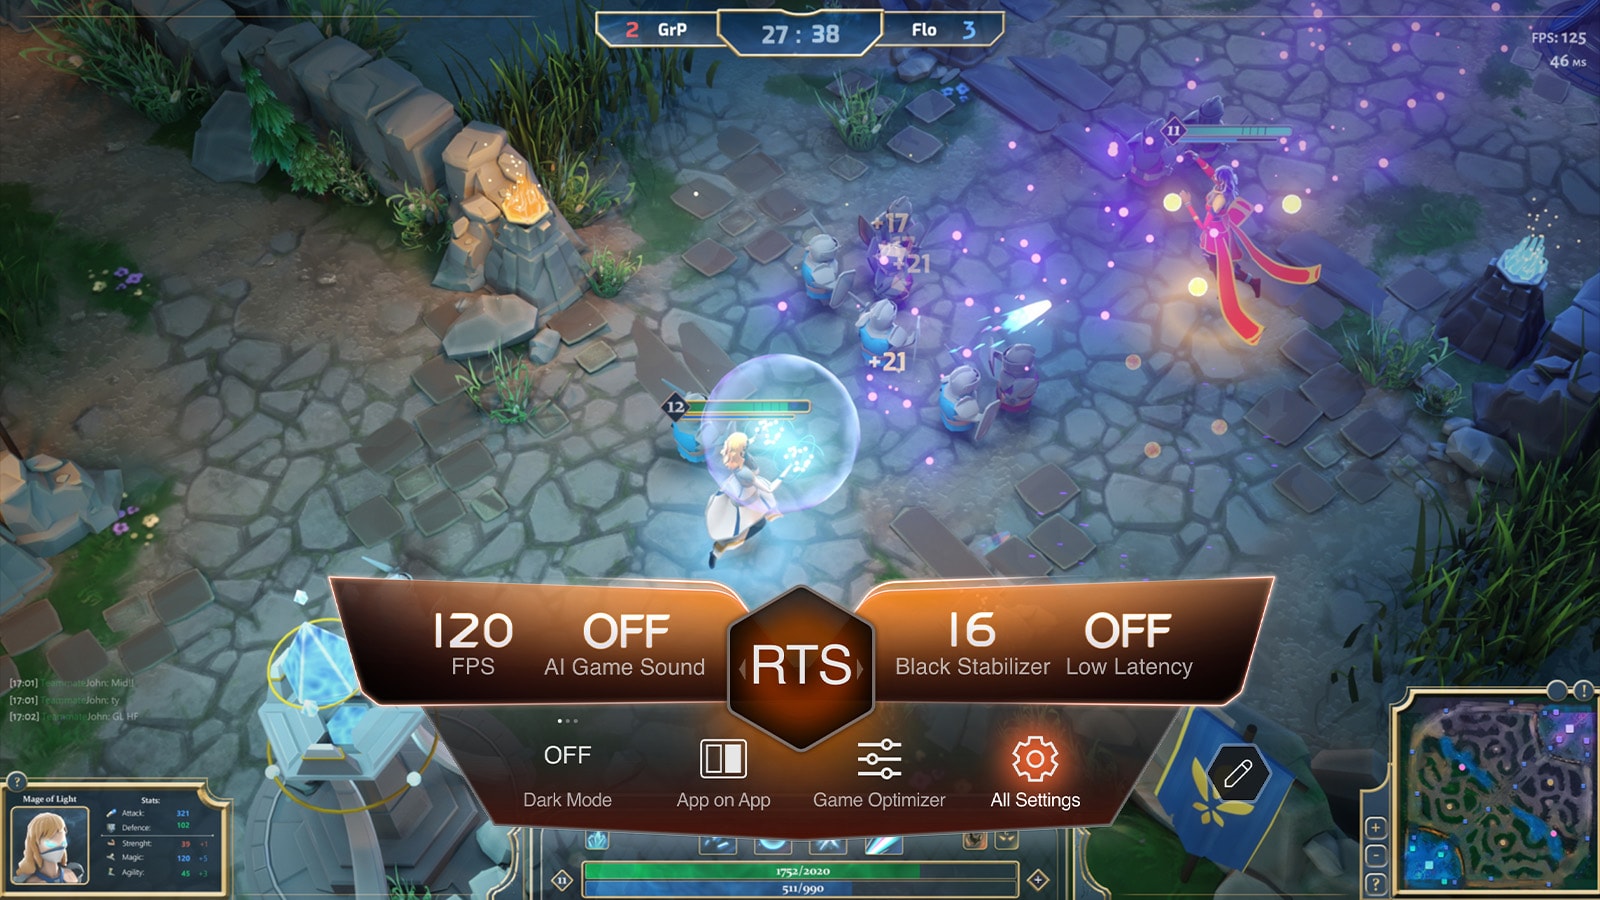 Hình ảnh hiển thị cài đặt và bảng điều khiển trò chơi được hiển thị trong khi chạy phần mềm chơi game.